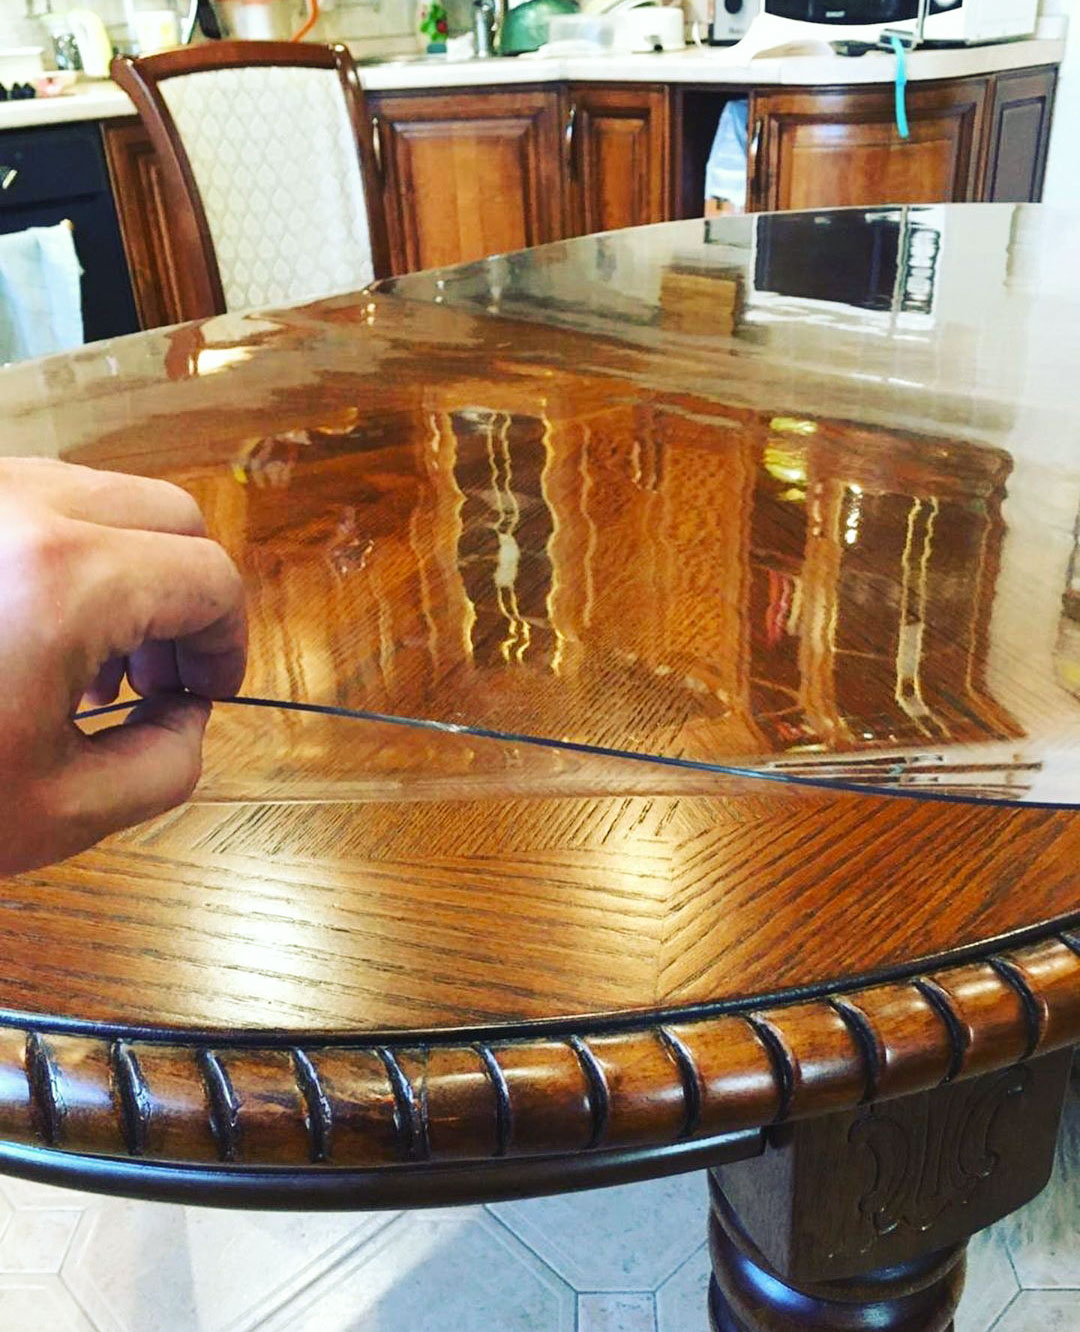 прозрачное покрытие для стола гибкое стекло